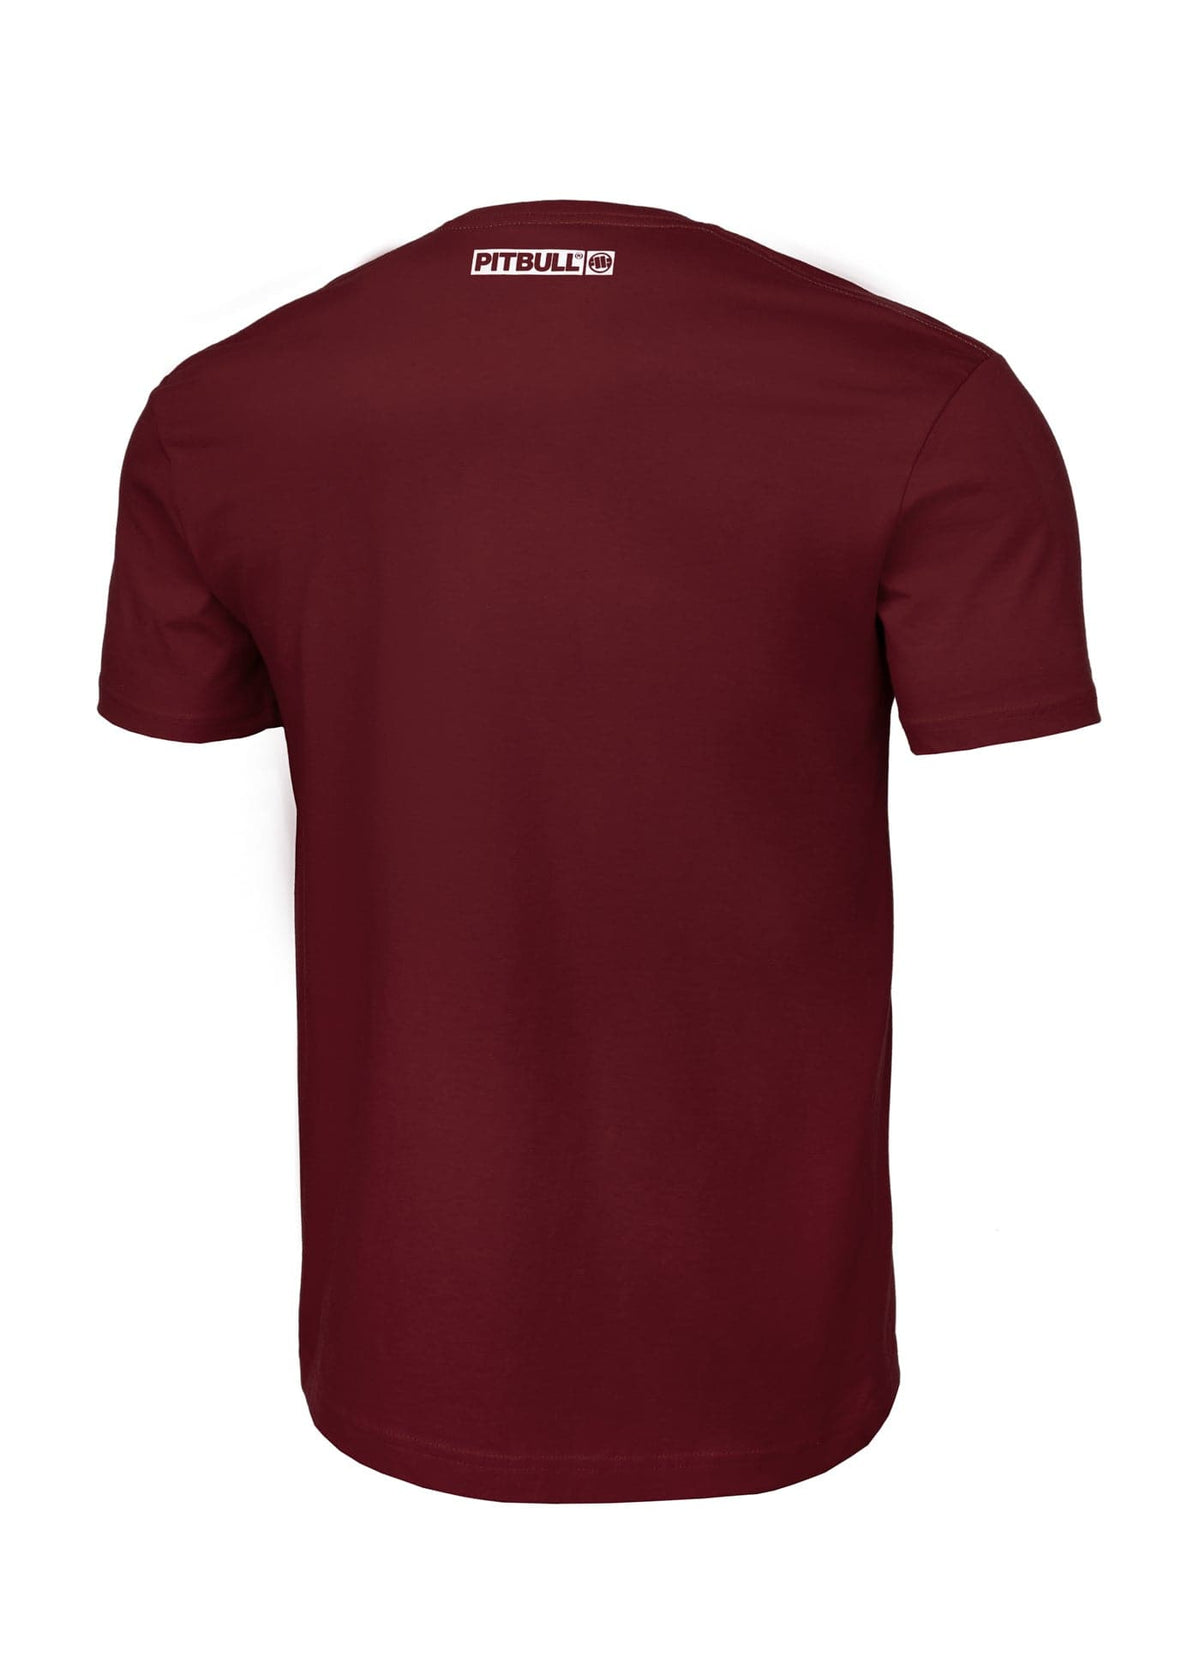 HILLTOP Lightweight Burgundy T-shirt